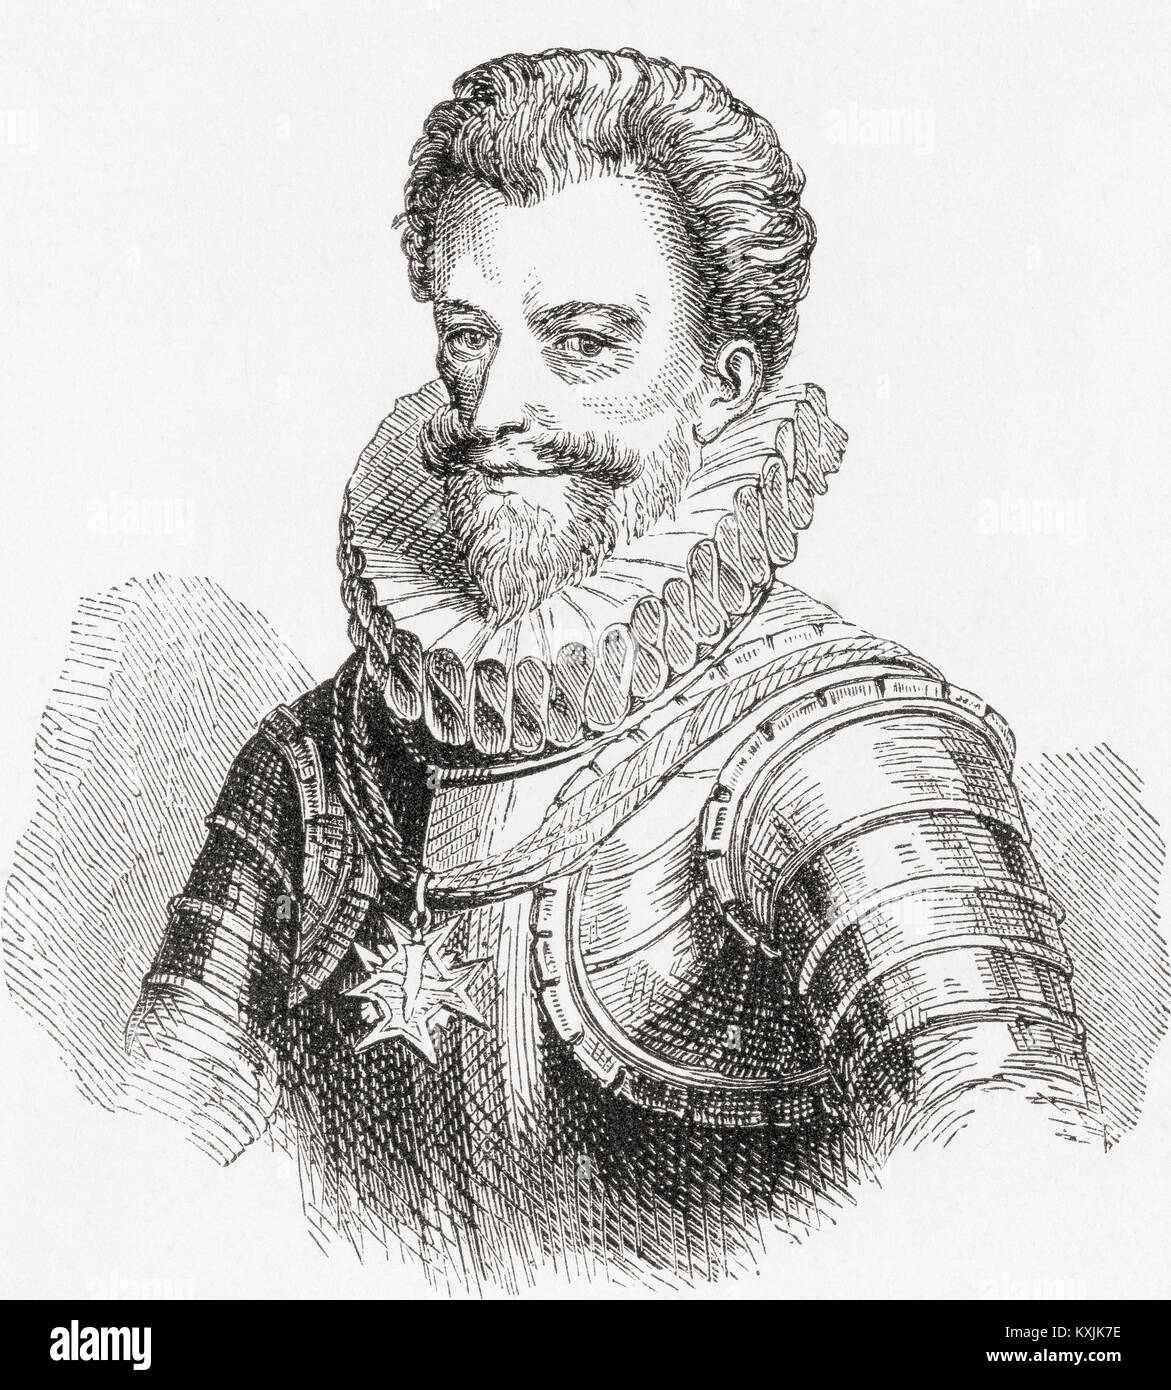 Henry I, Prince de Joinville, Duc de Guise, comte d'Eu, 1550 - 1588, aka Le Balafré (Scarface). De Ward et verrouiller l'illustre l'histoire du monde, publié c.1882. Banque D'Images